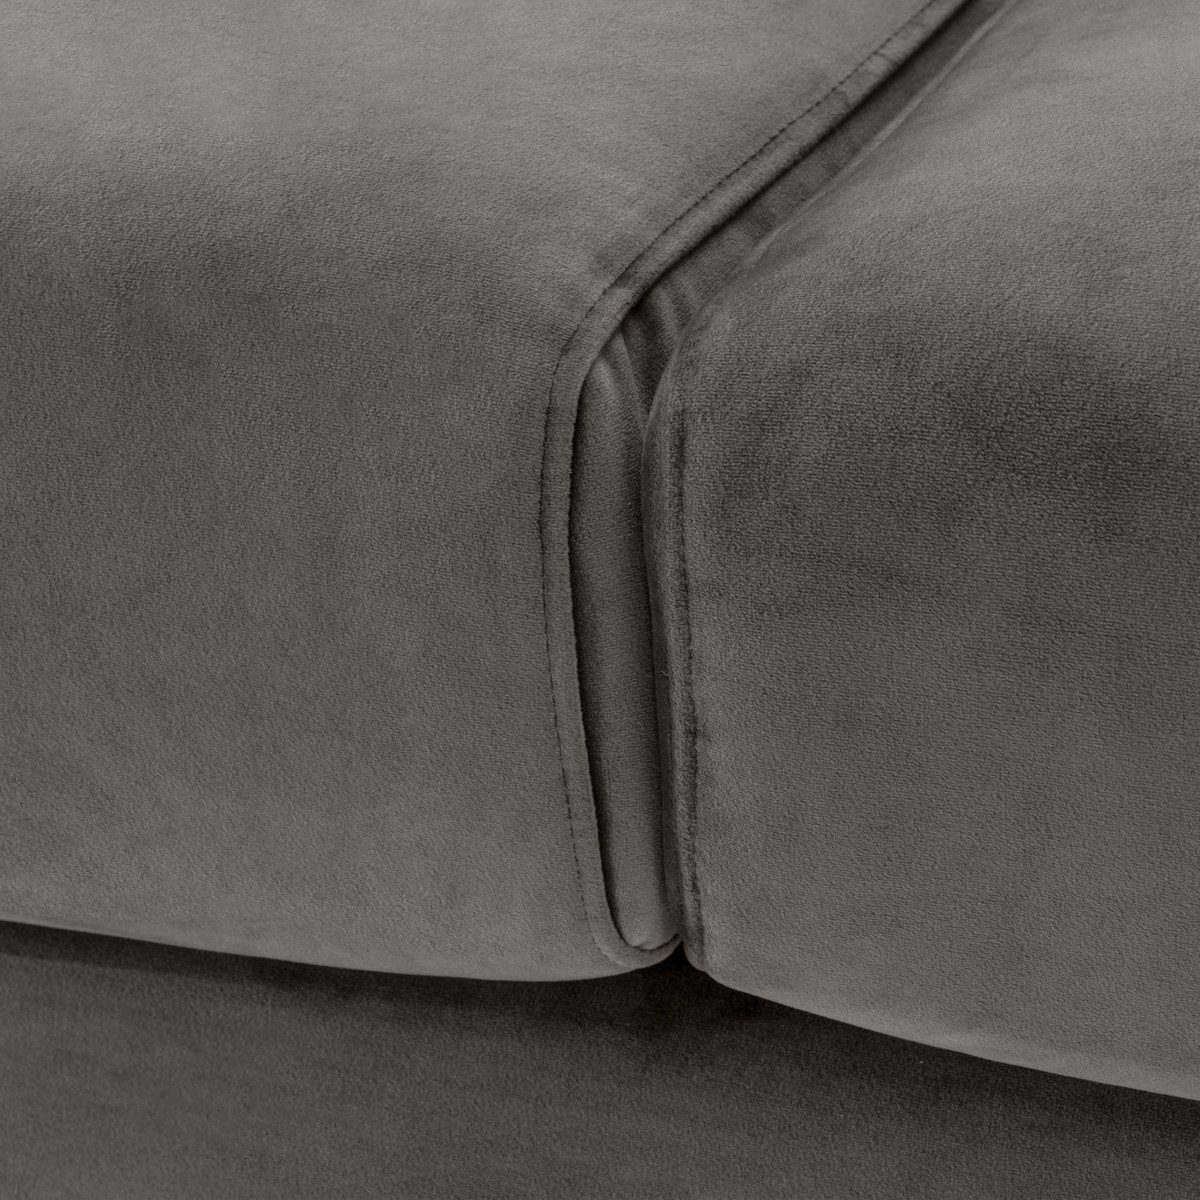 Casa Padrino Loungesofa Luxus mit Samtsofa 73 4 / Möbel - Wohnzimmer Grau Kissen 94 x cm Sofa x 223 H. Messingfarben Luxus 